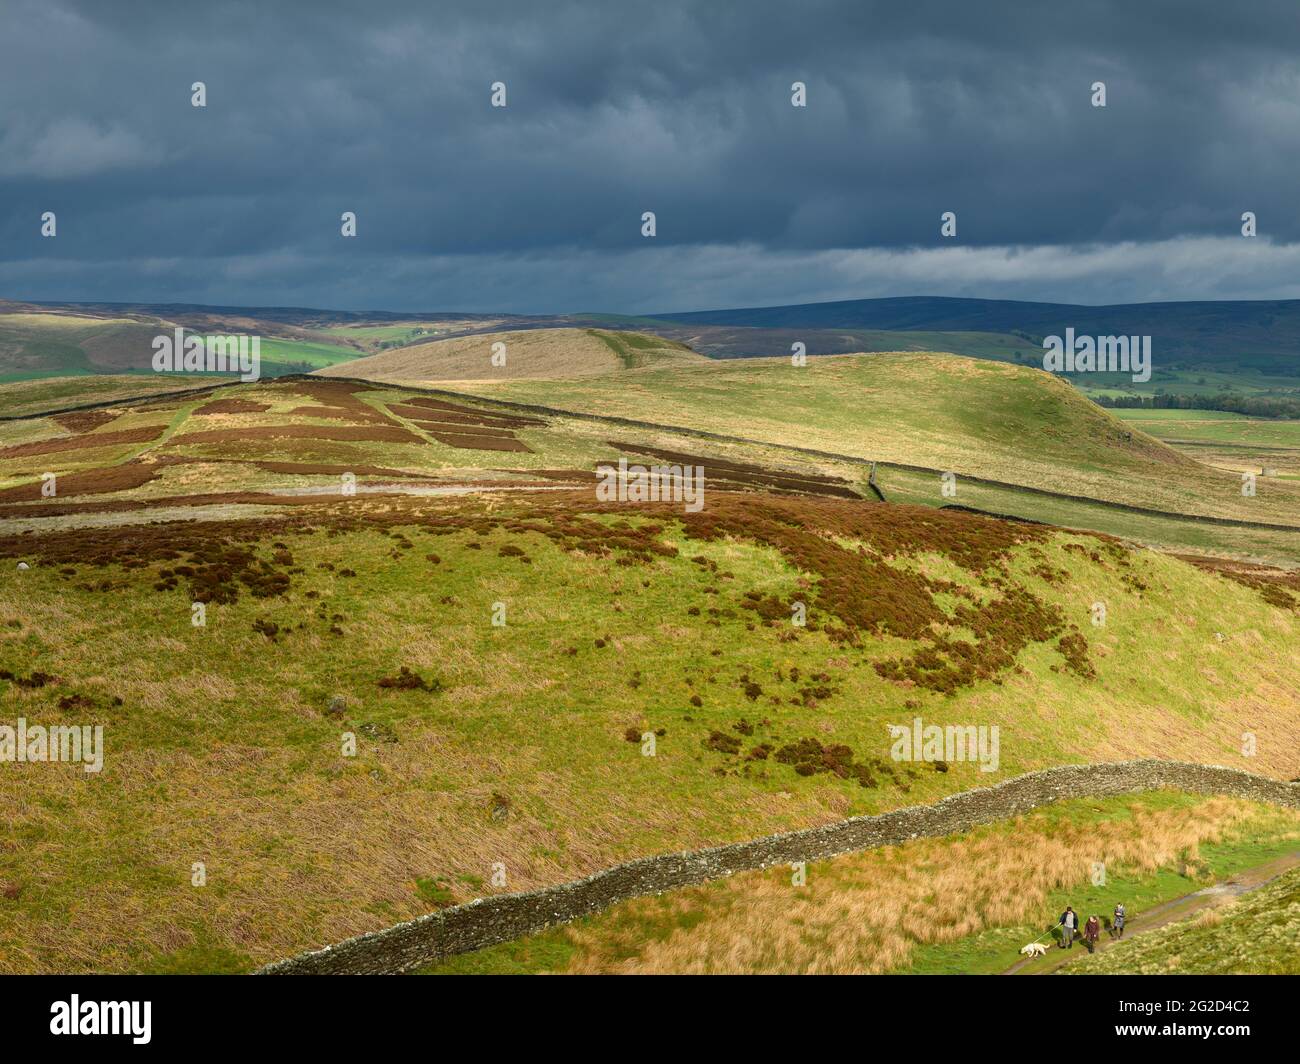 Paesaggio rurale scenico e nuvole di pioggia scure (zona collinare, colline ondulate e soleggiate, persone che camminano cane da compagnia) - vista a Wharfedale, Yorkshire Dales Inghilterra, Regno Unito Foto Stock